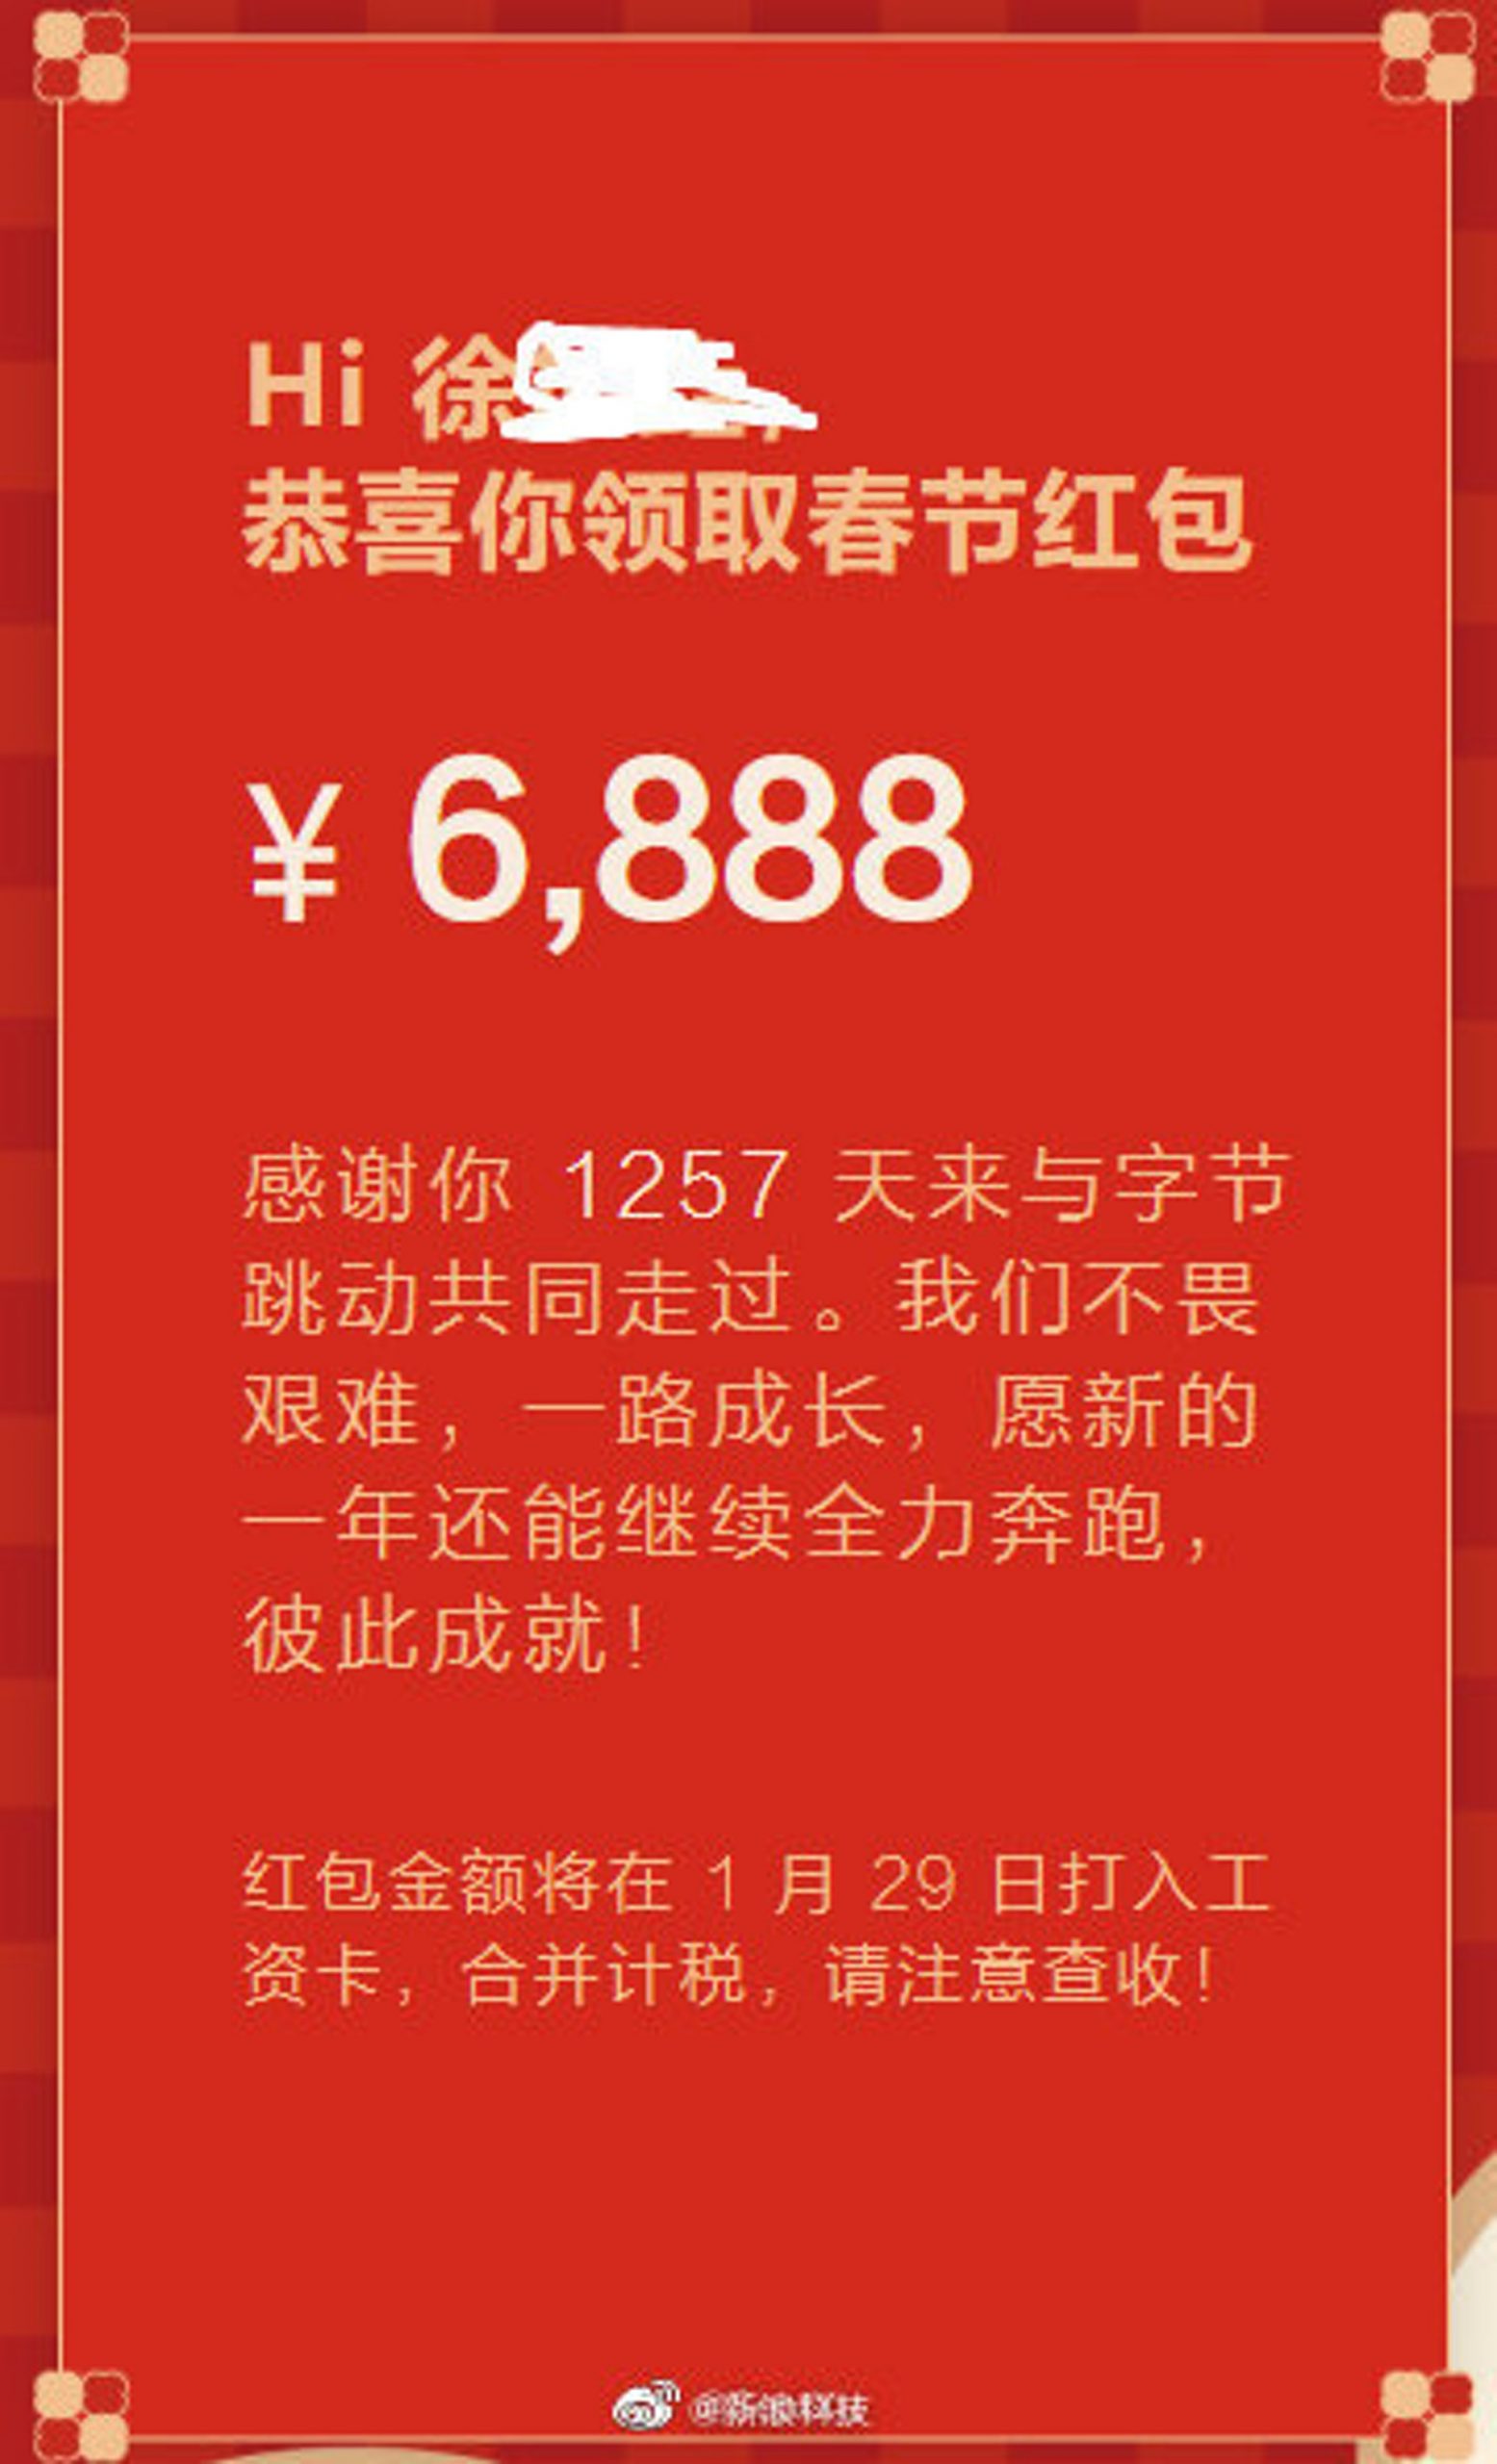 字节跳动向被裁员工发春节红包　任职年限决定金额最高6888人民币